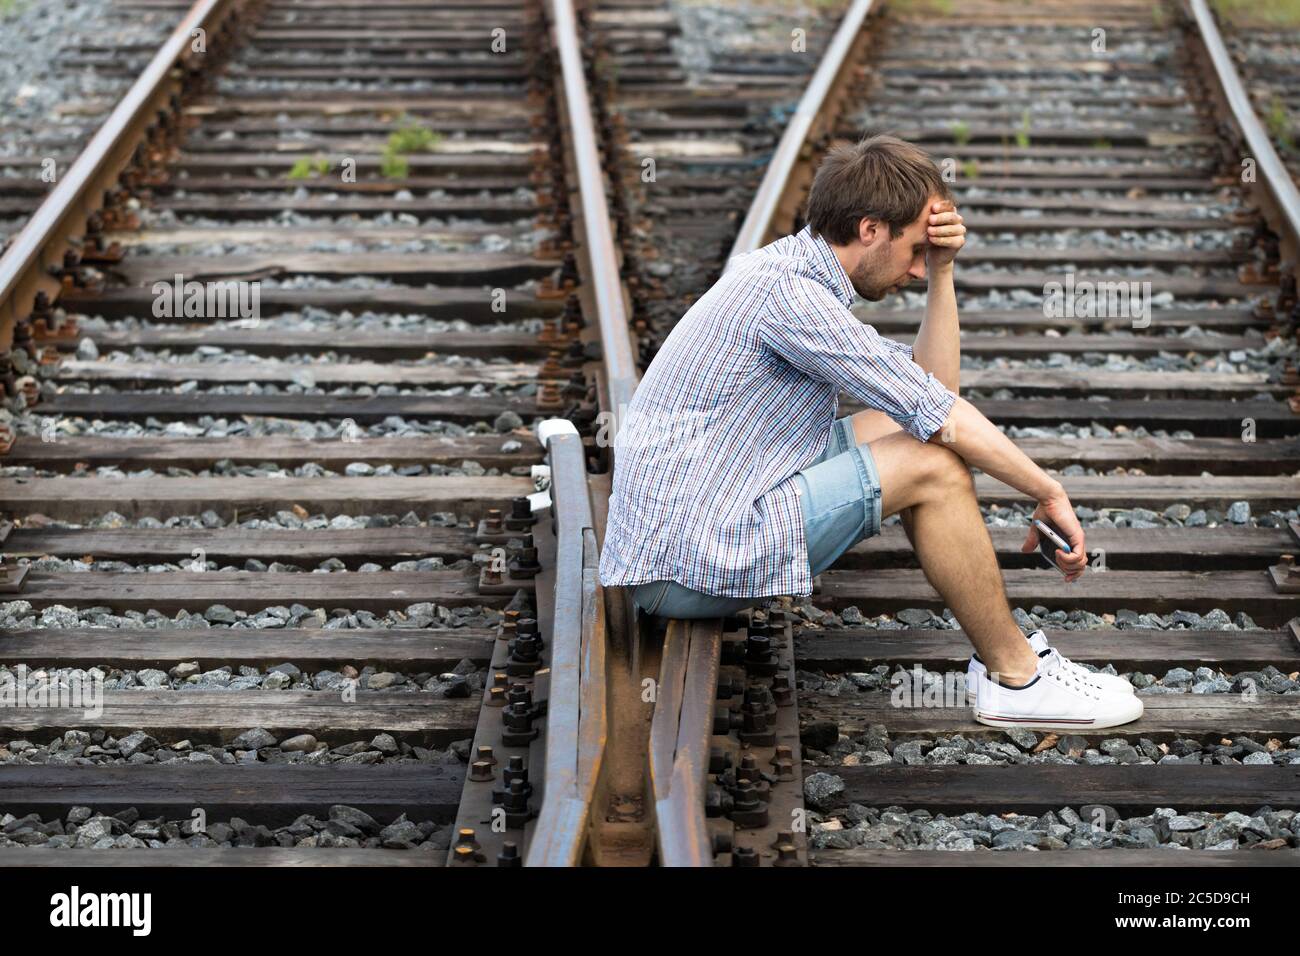 Uomo depresso seduto sulle piste ferroviarie, tenendo il telefono, prende una decisione difficile di vivere nel passato o cambiare il suo futuro. Cambiare il percorso di vita c Foto Stock